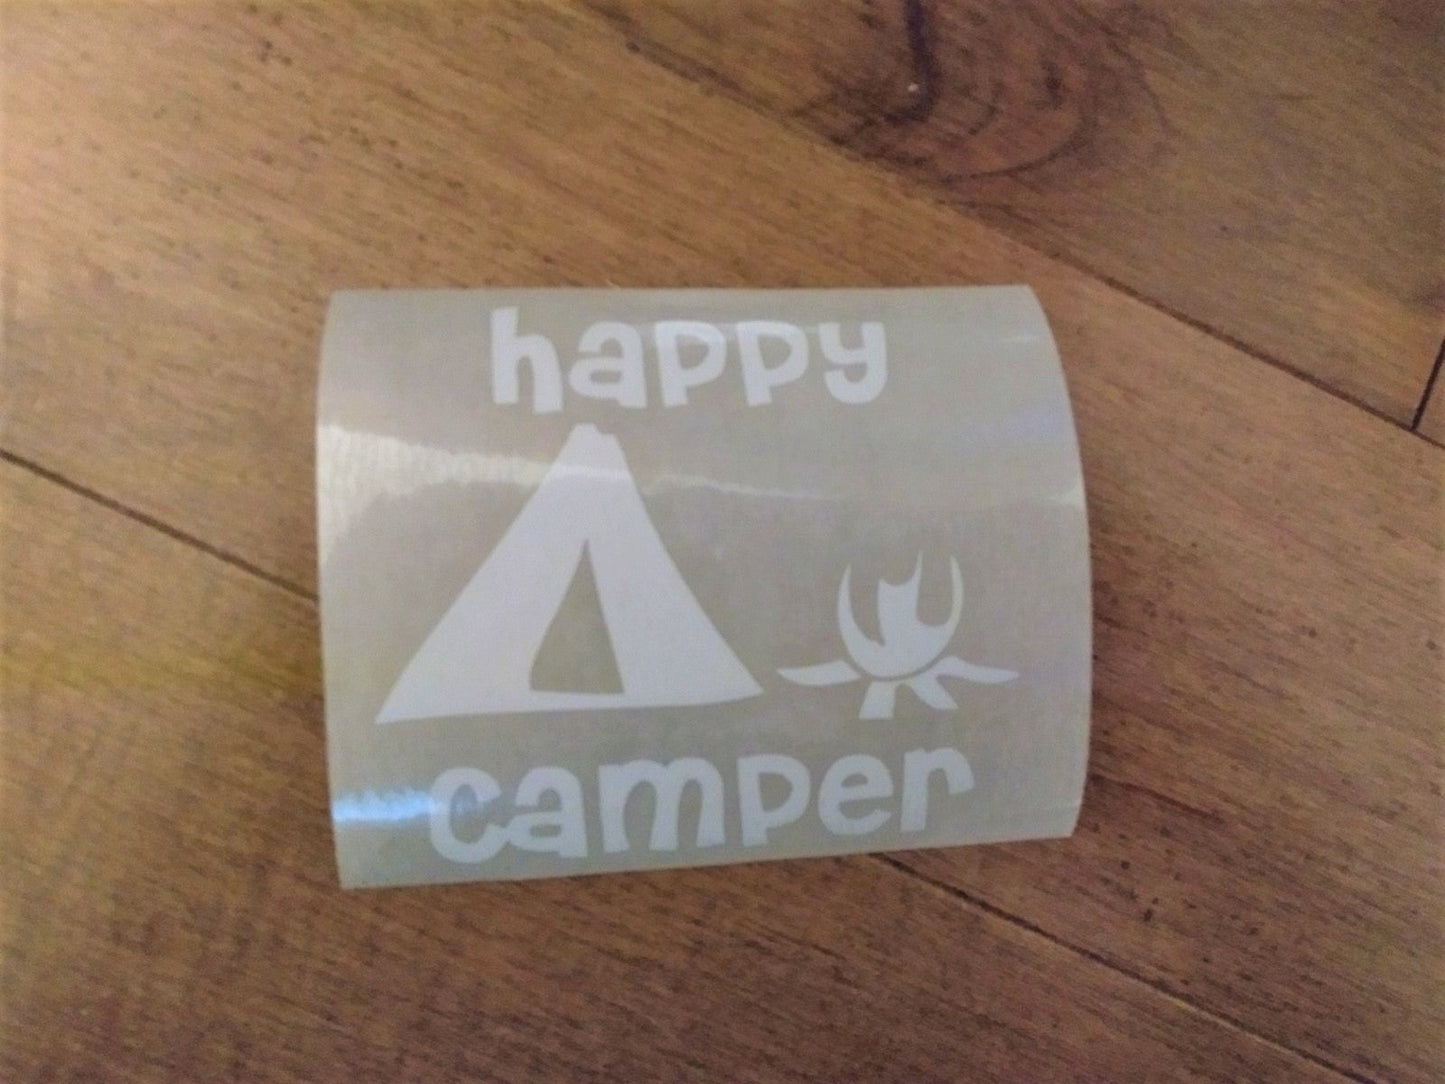 Décalque de vinyle - Happy camper